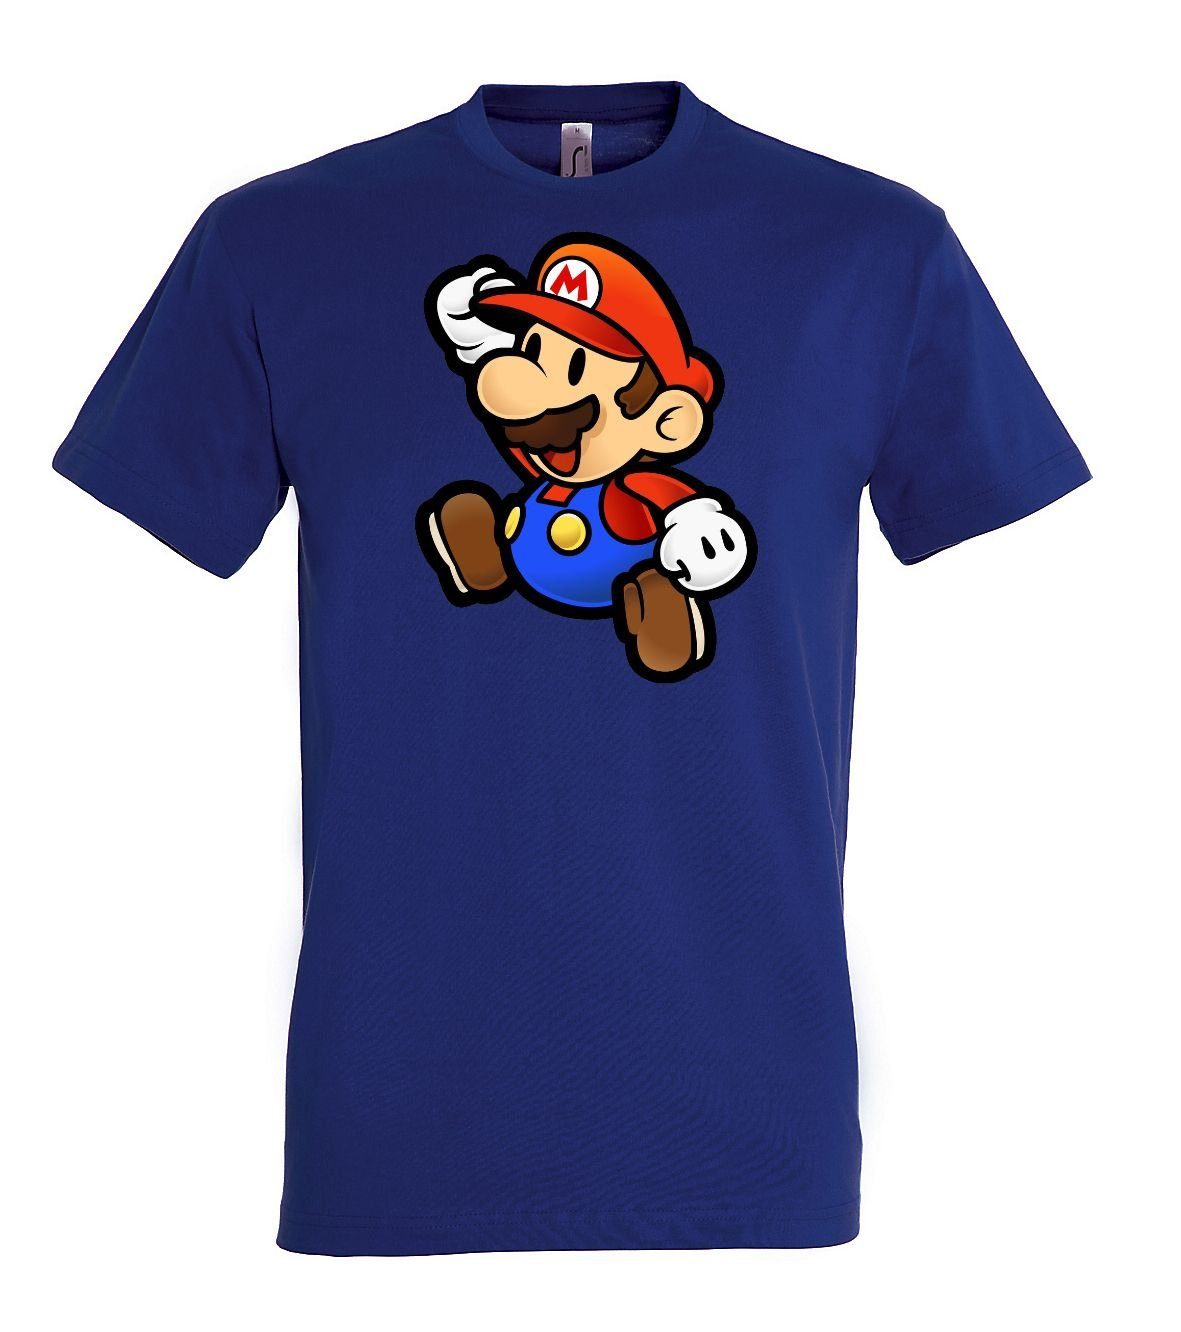 Youth Designz Herren Navyblau Frontprint Mit T-Shirt T-Shirt trendigem Mario